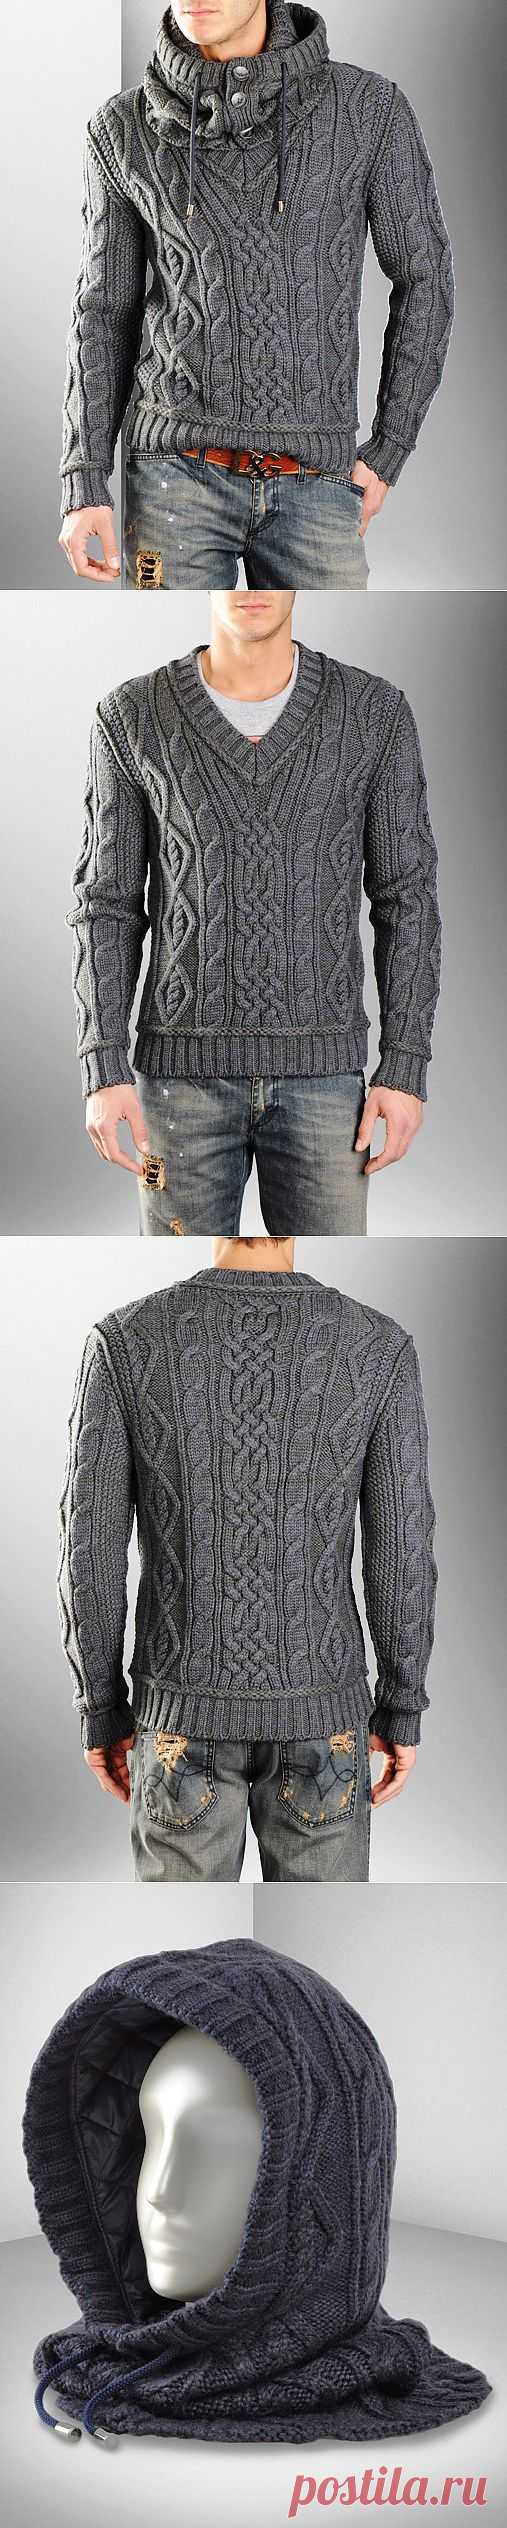 Мужской пуловер со снудом от Dolce&Gabbana.